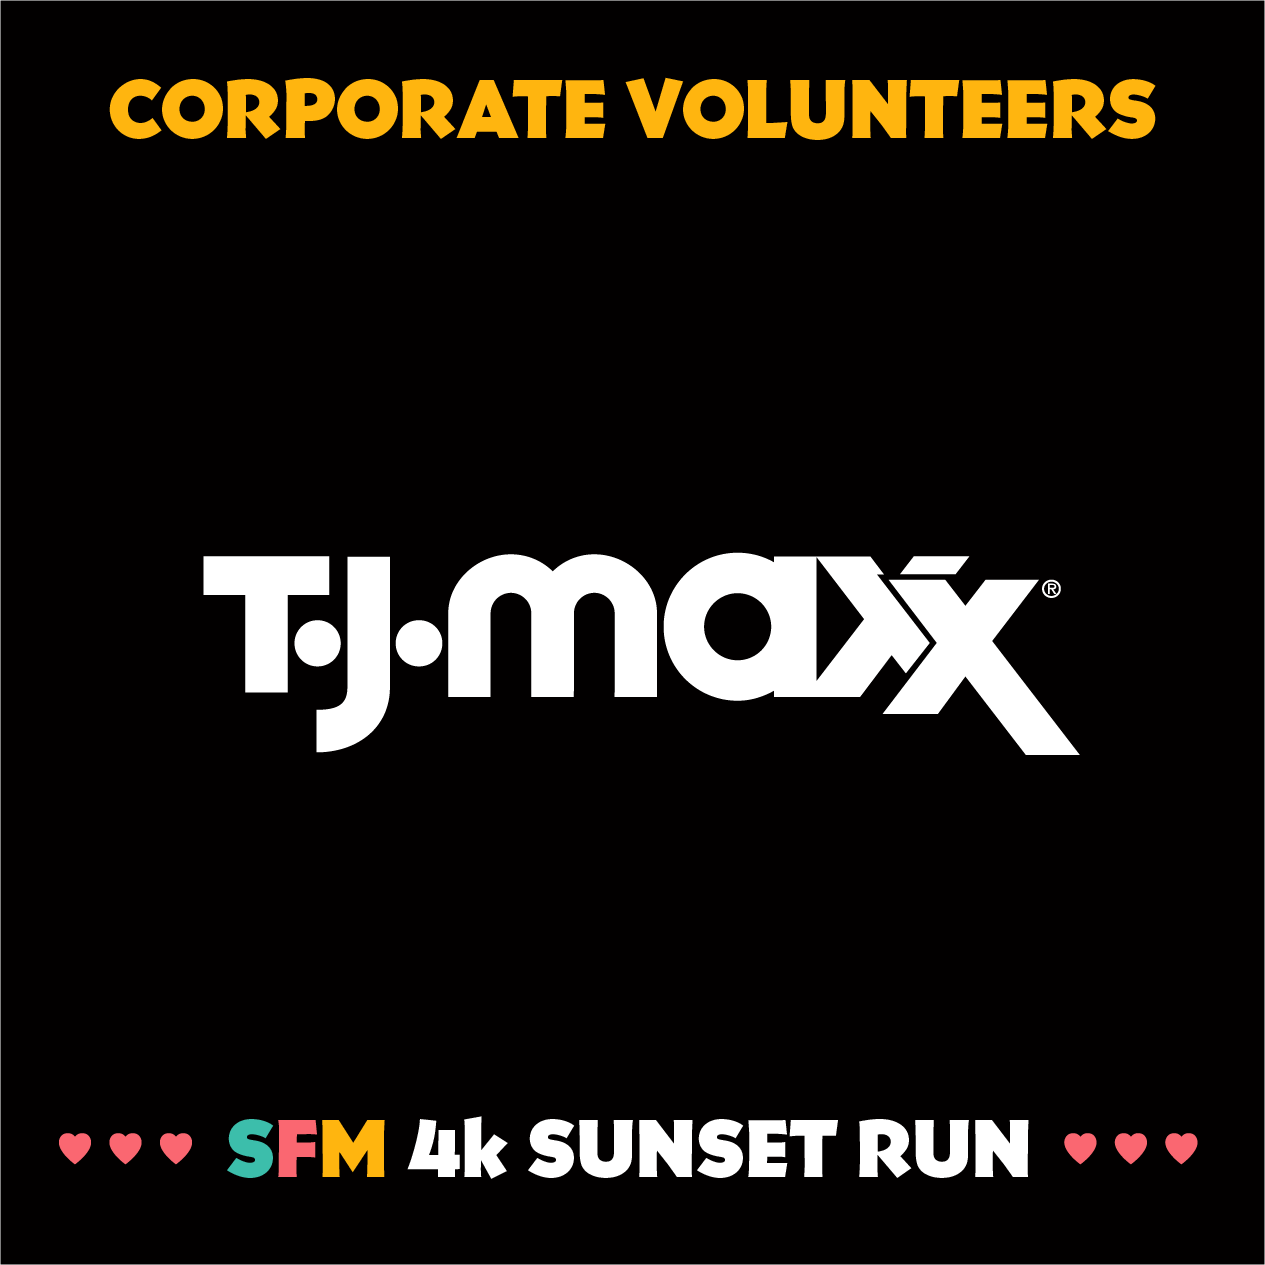 tjmaxx_volunteers.png